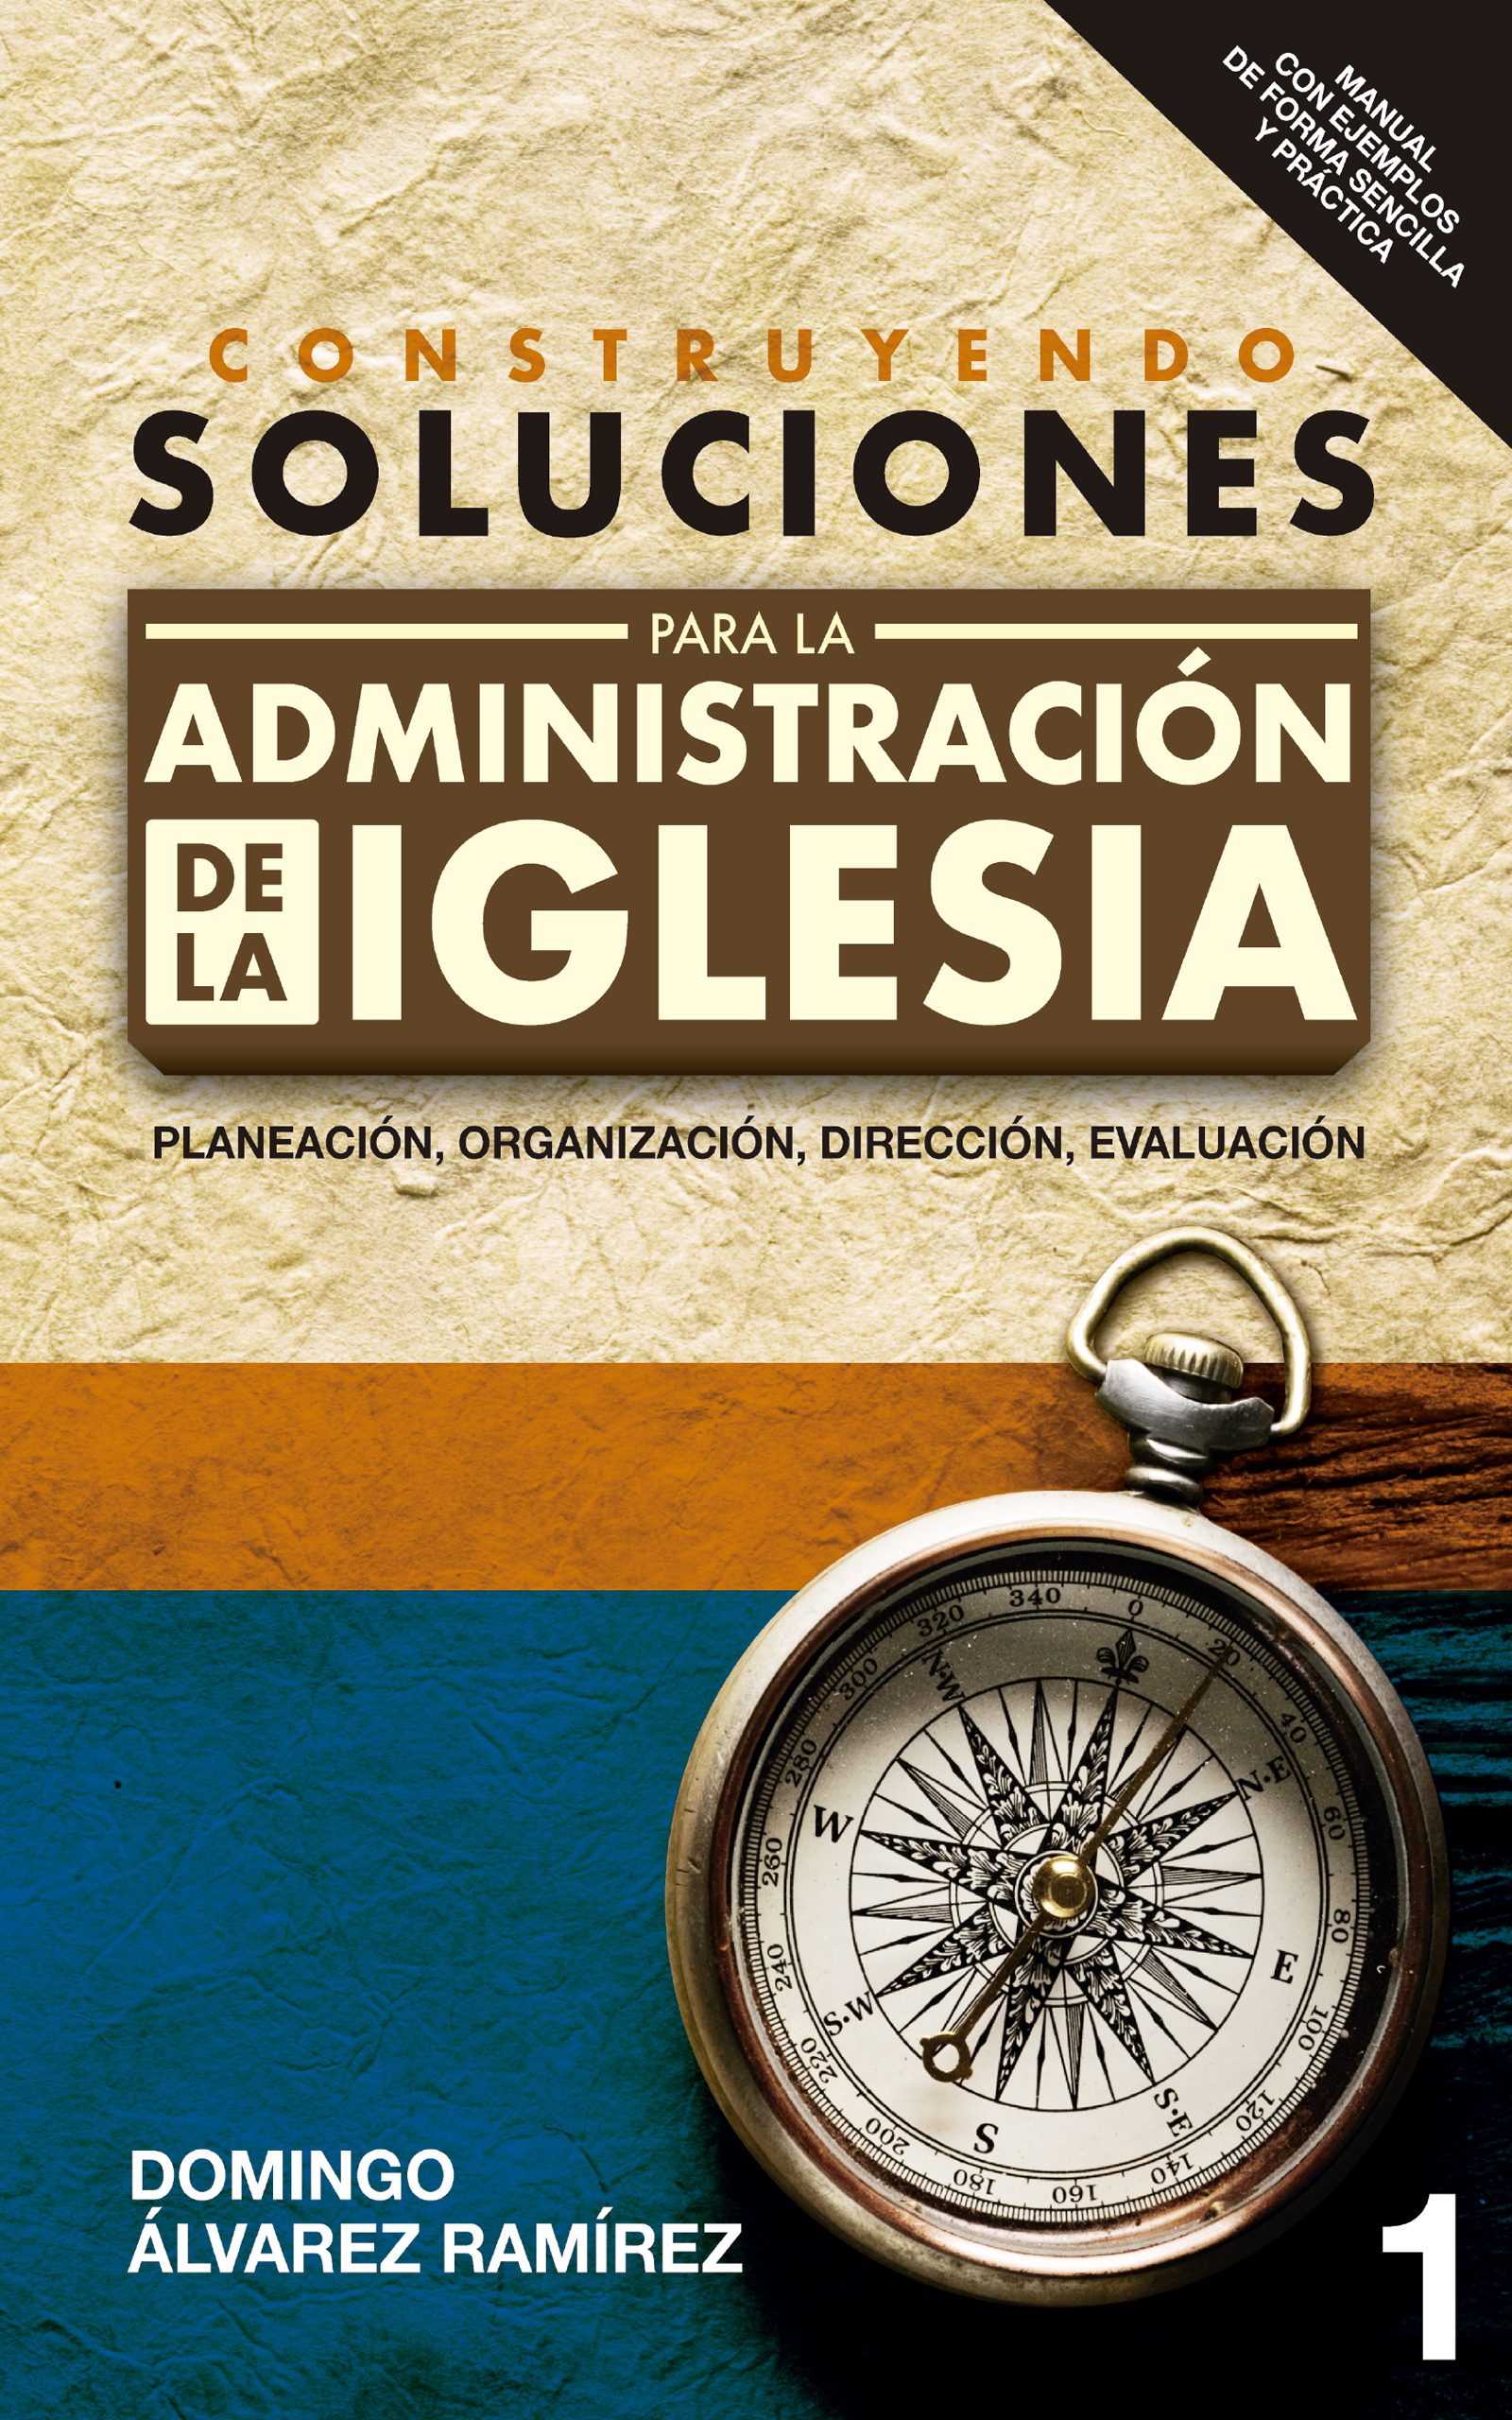 Construyendo soluciones para la administración de la Iglesia, de Domingo Álvarez